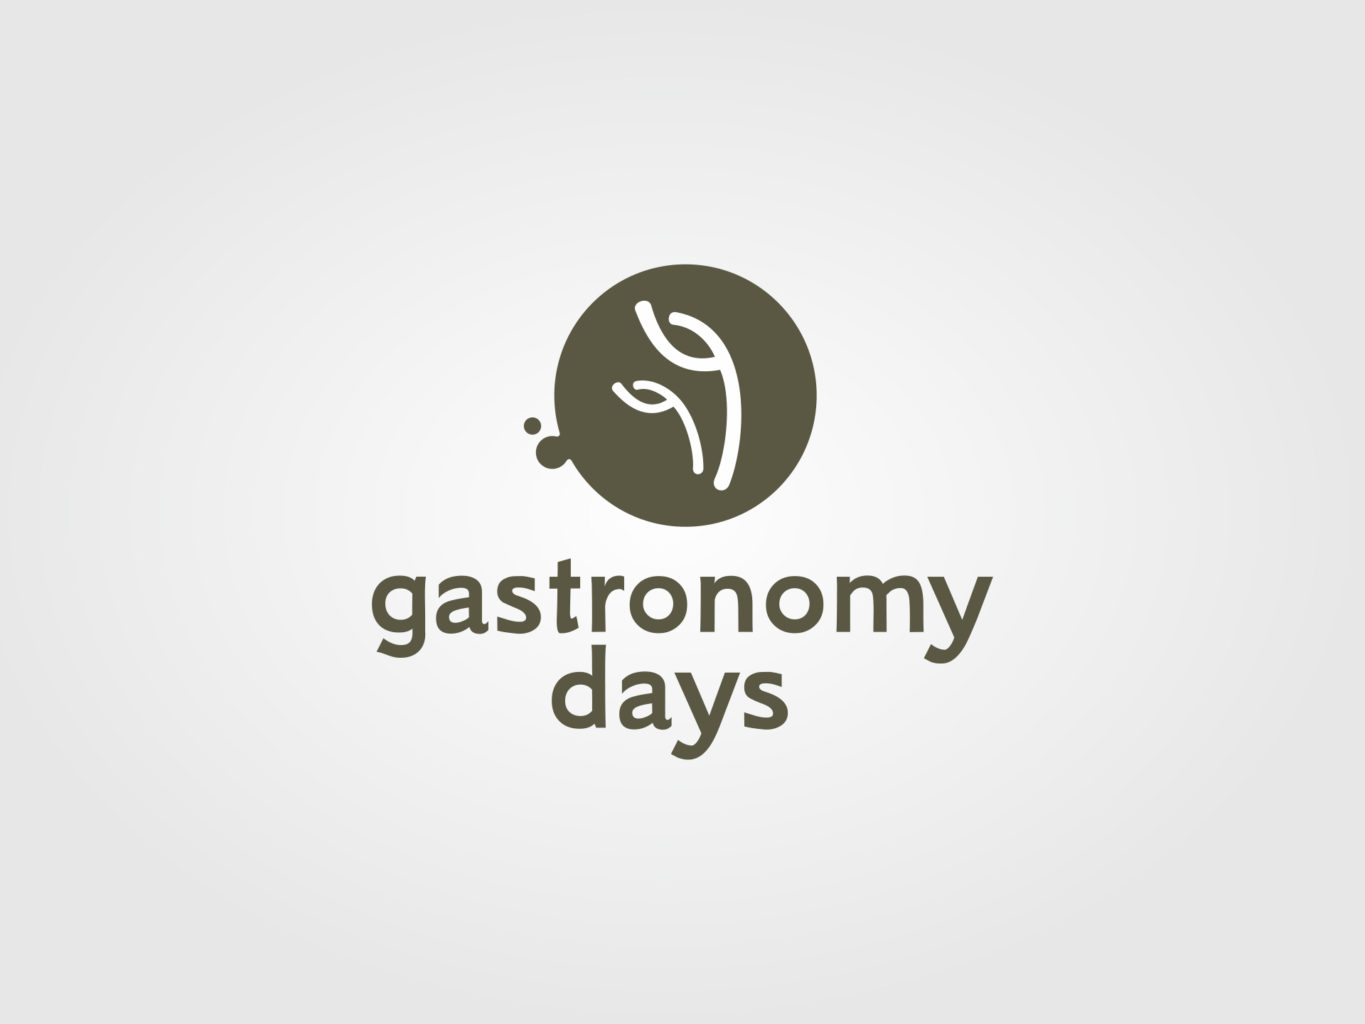 gastronomy days logo by fiftyeggz